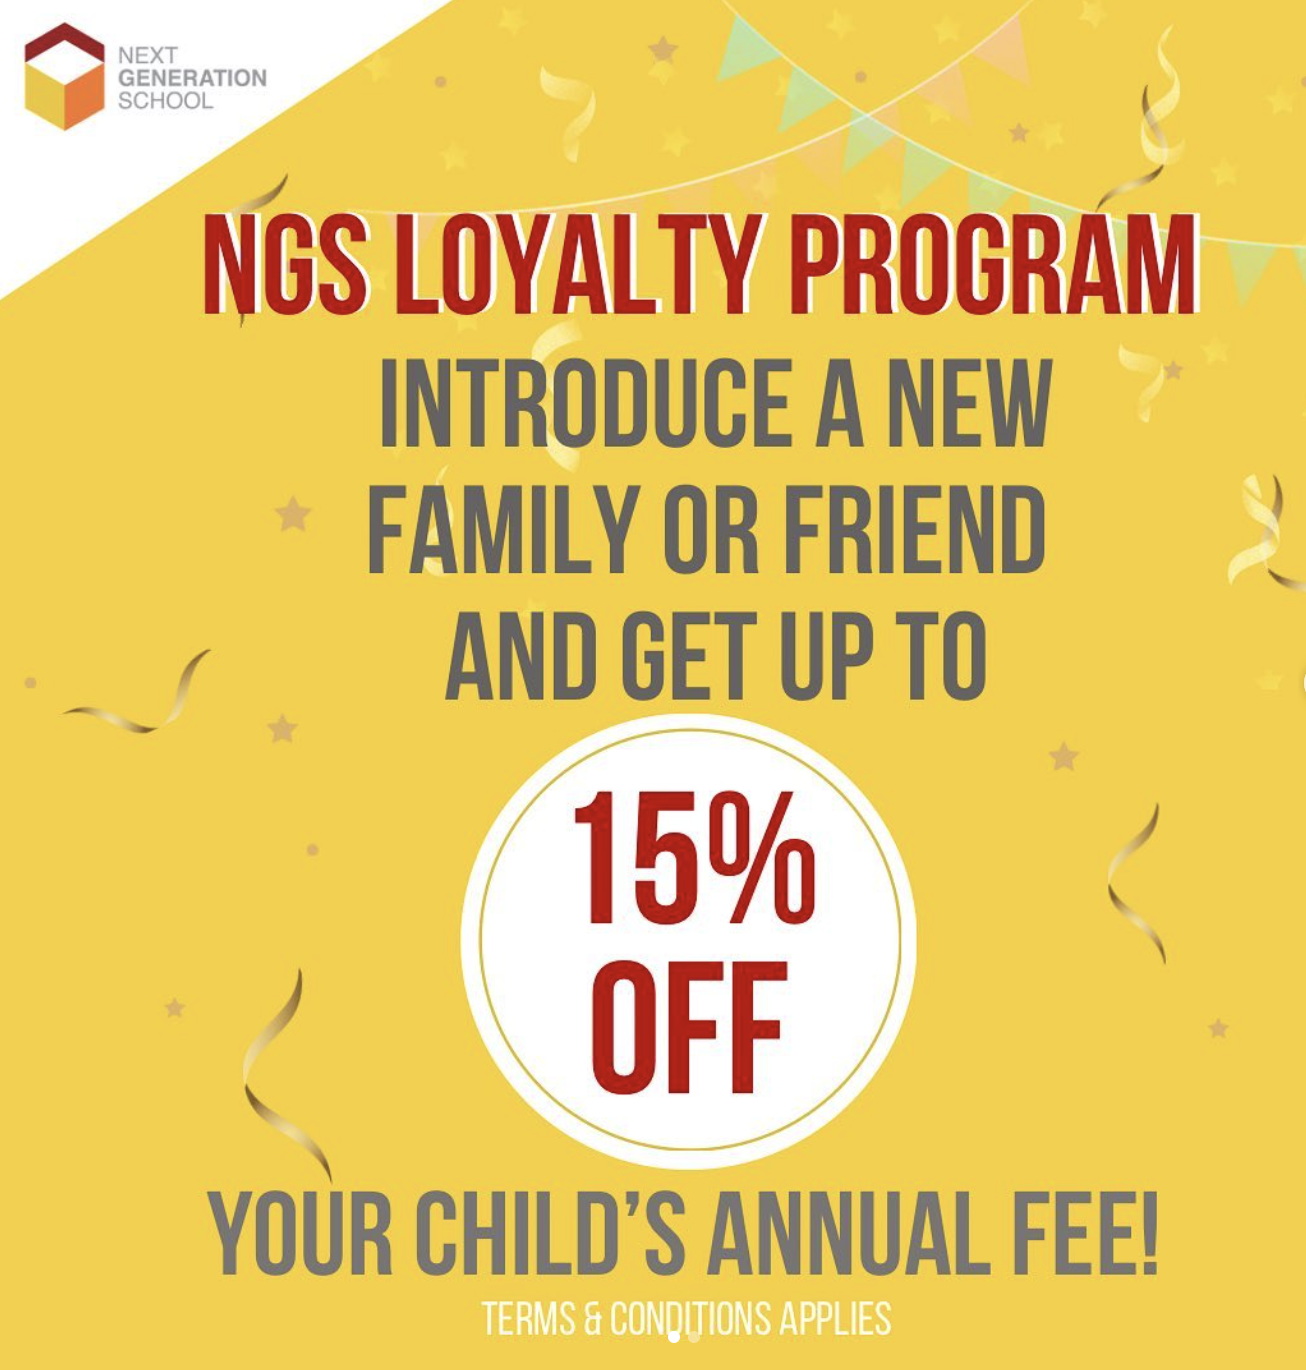 NGS Loyalty Program 